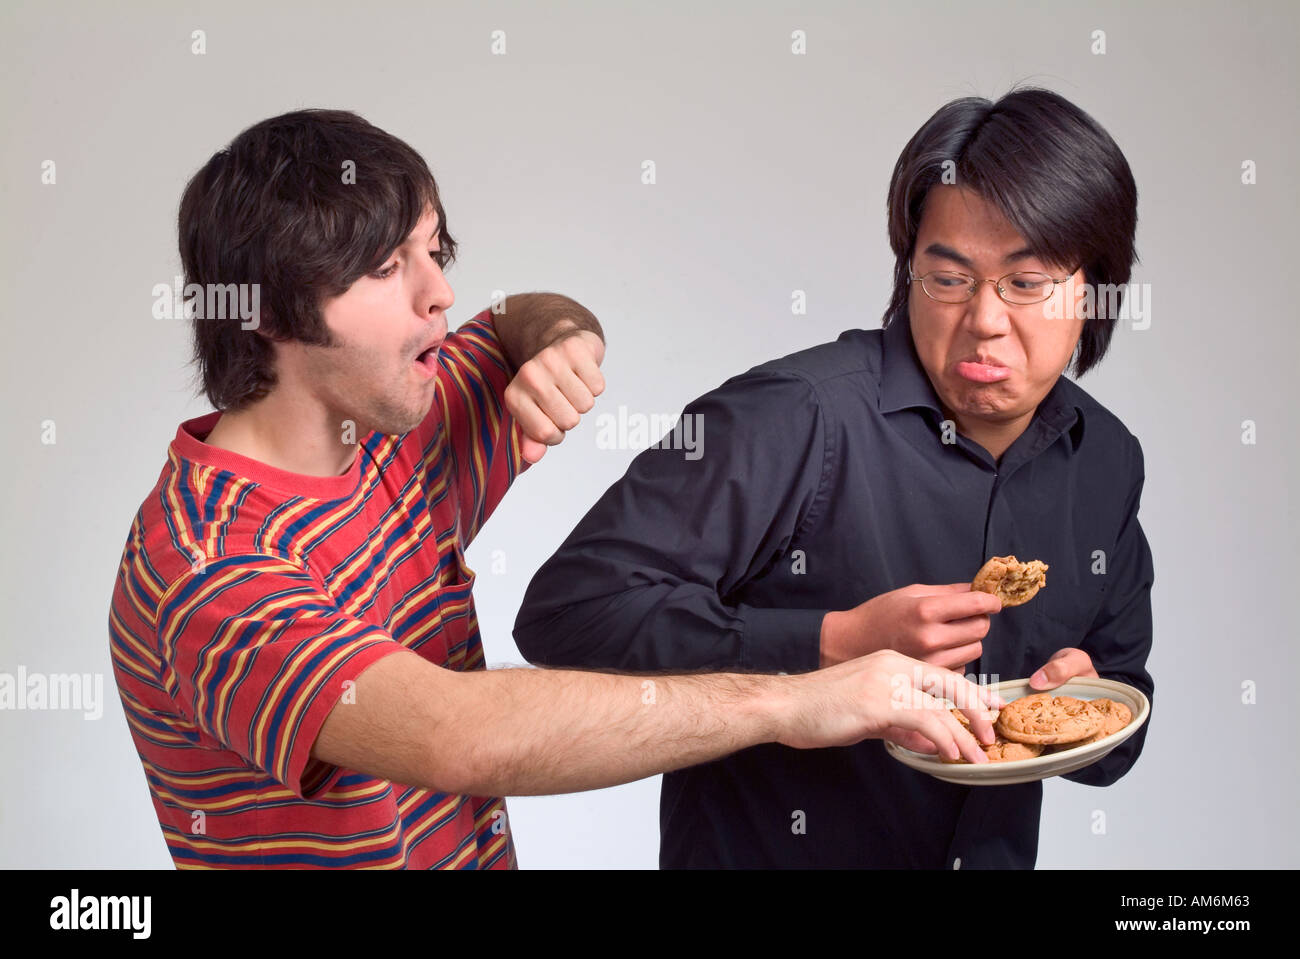 Deux garçons qui se battent pour les cookies et nerd étudiant conservateur Banque D'Images